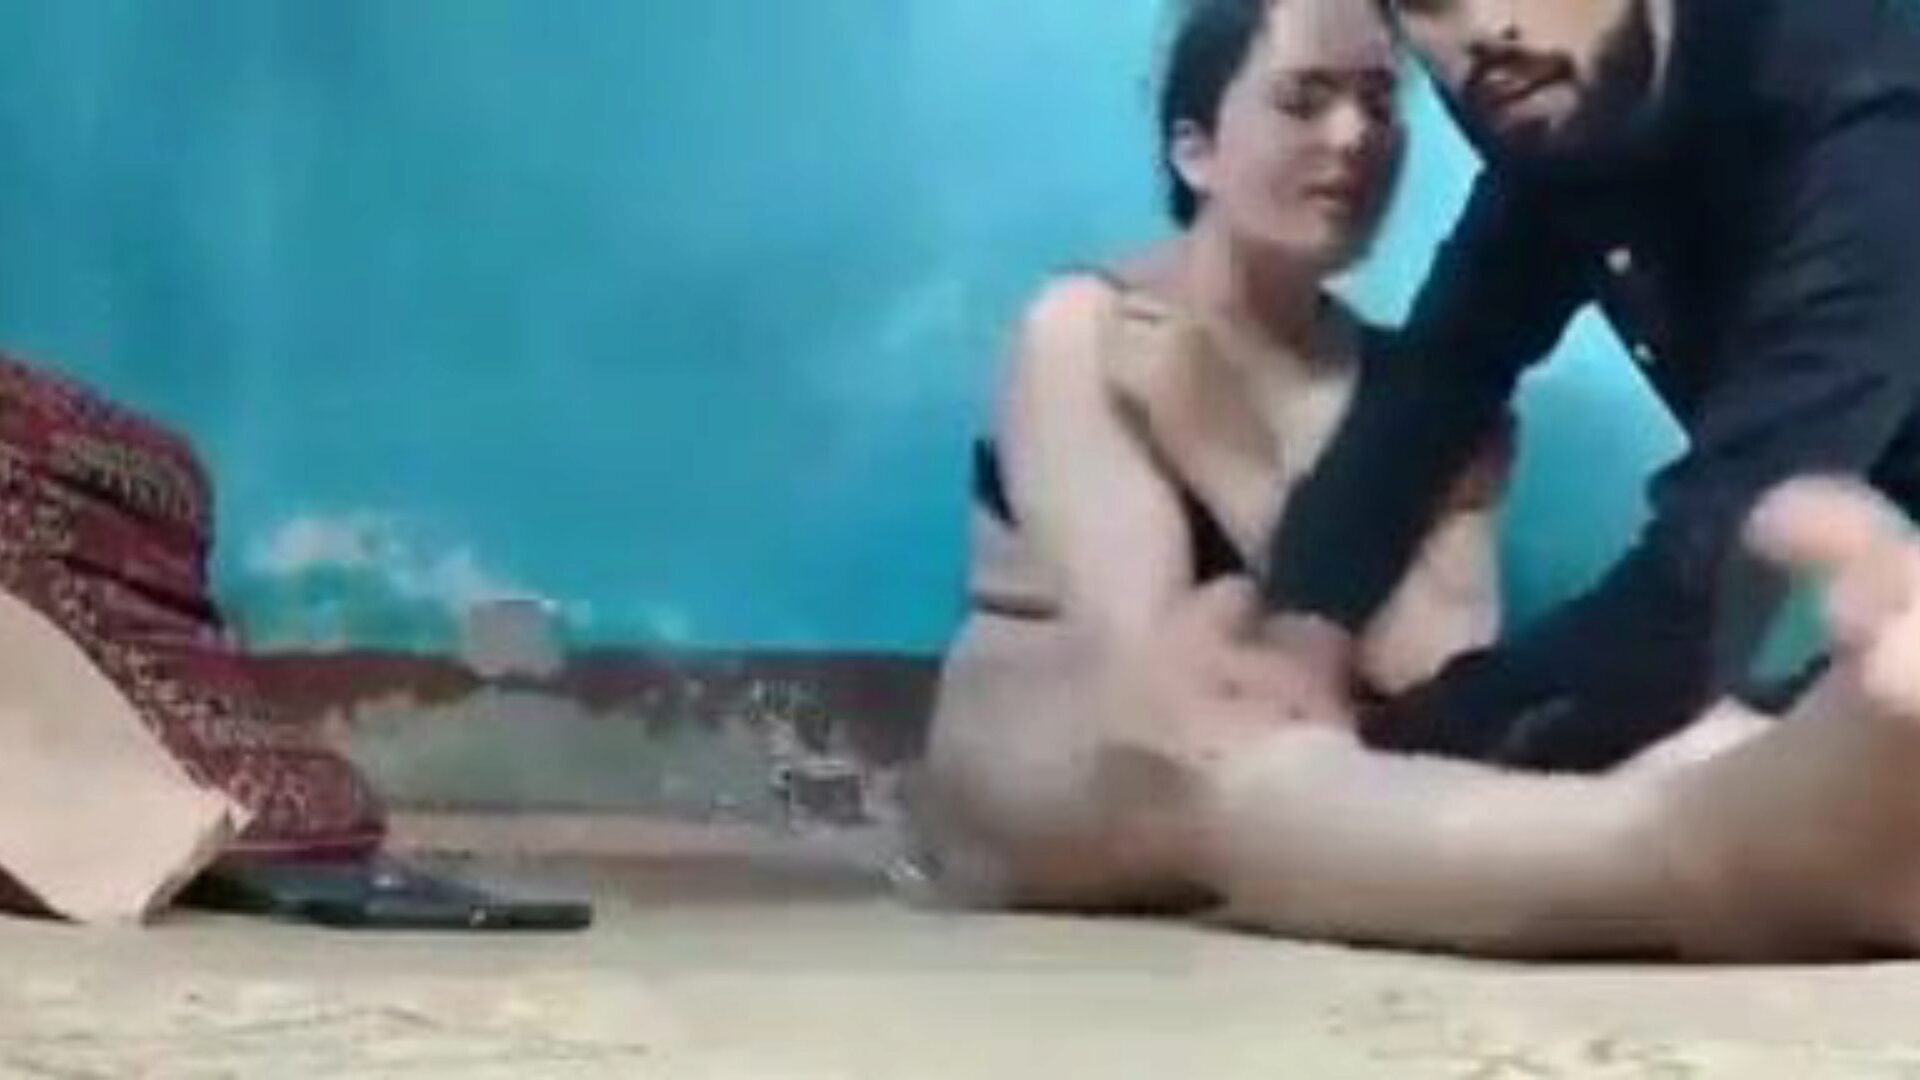 Kaszmirskie filmy erotyczne: darmowe indyjskie filmy porno 69 - xhamster oglądaj kaszmirskie filmy erotyczne za darmo na xhamster, z najseksowniejszą kolekcją indyjskich XXX darmowych scen odcinków porno z seksem i historią